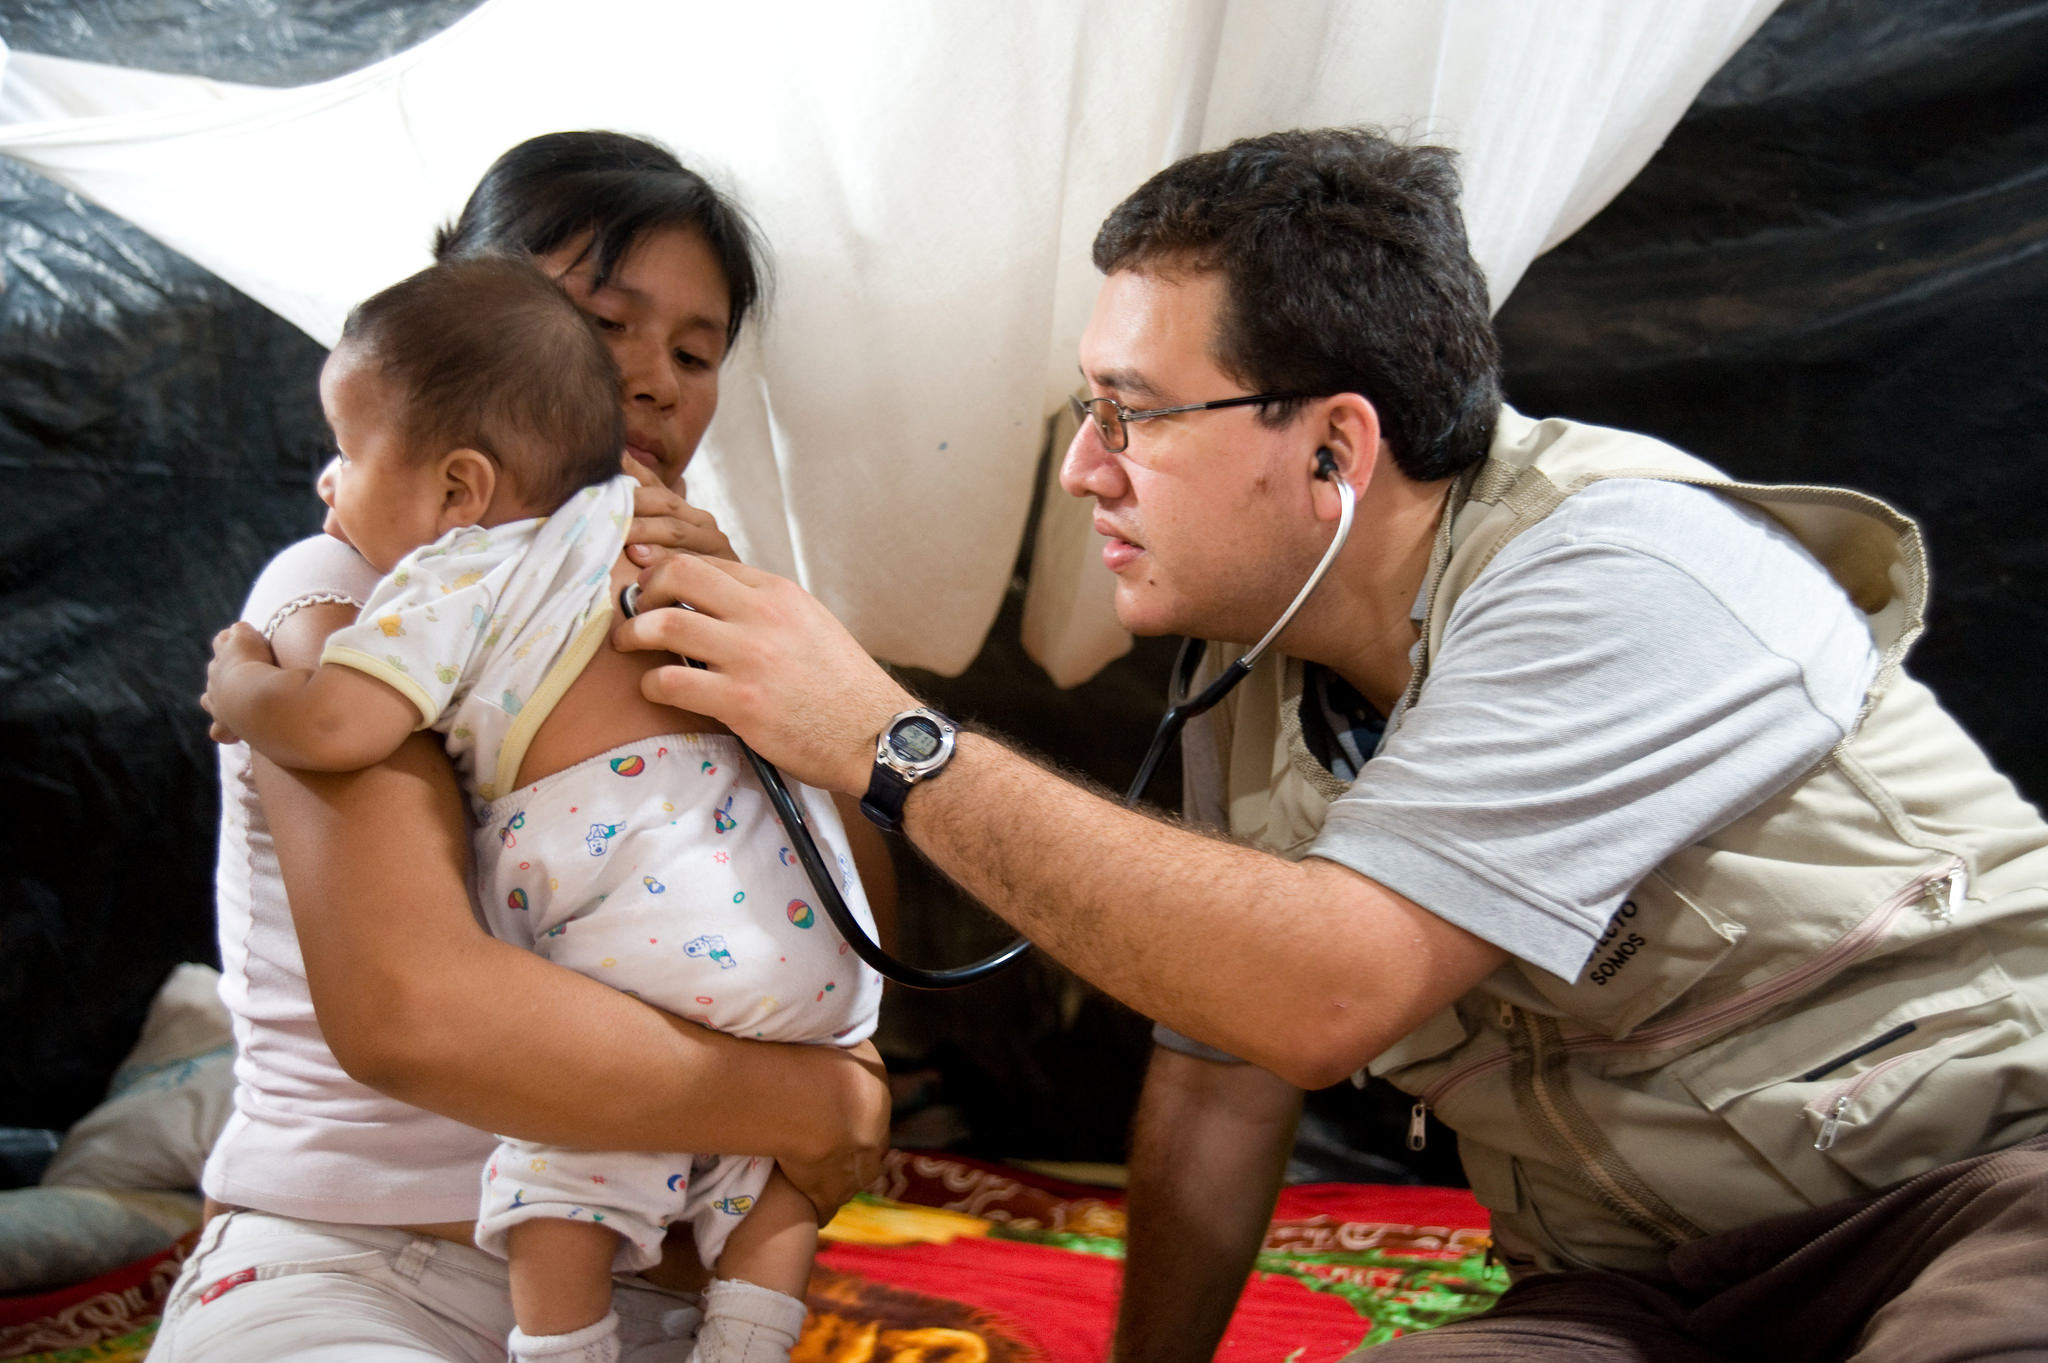 Mengetahui Tentang Asuransi Kesehatan Peru